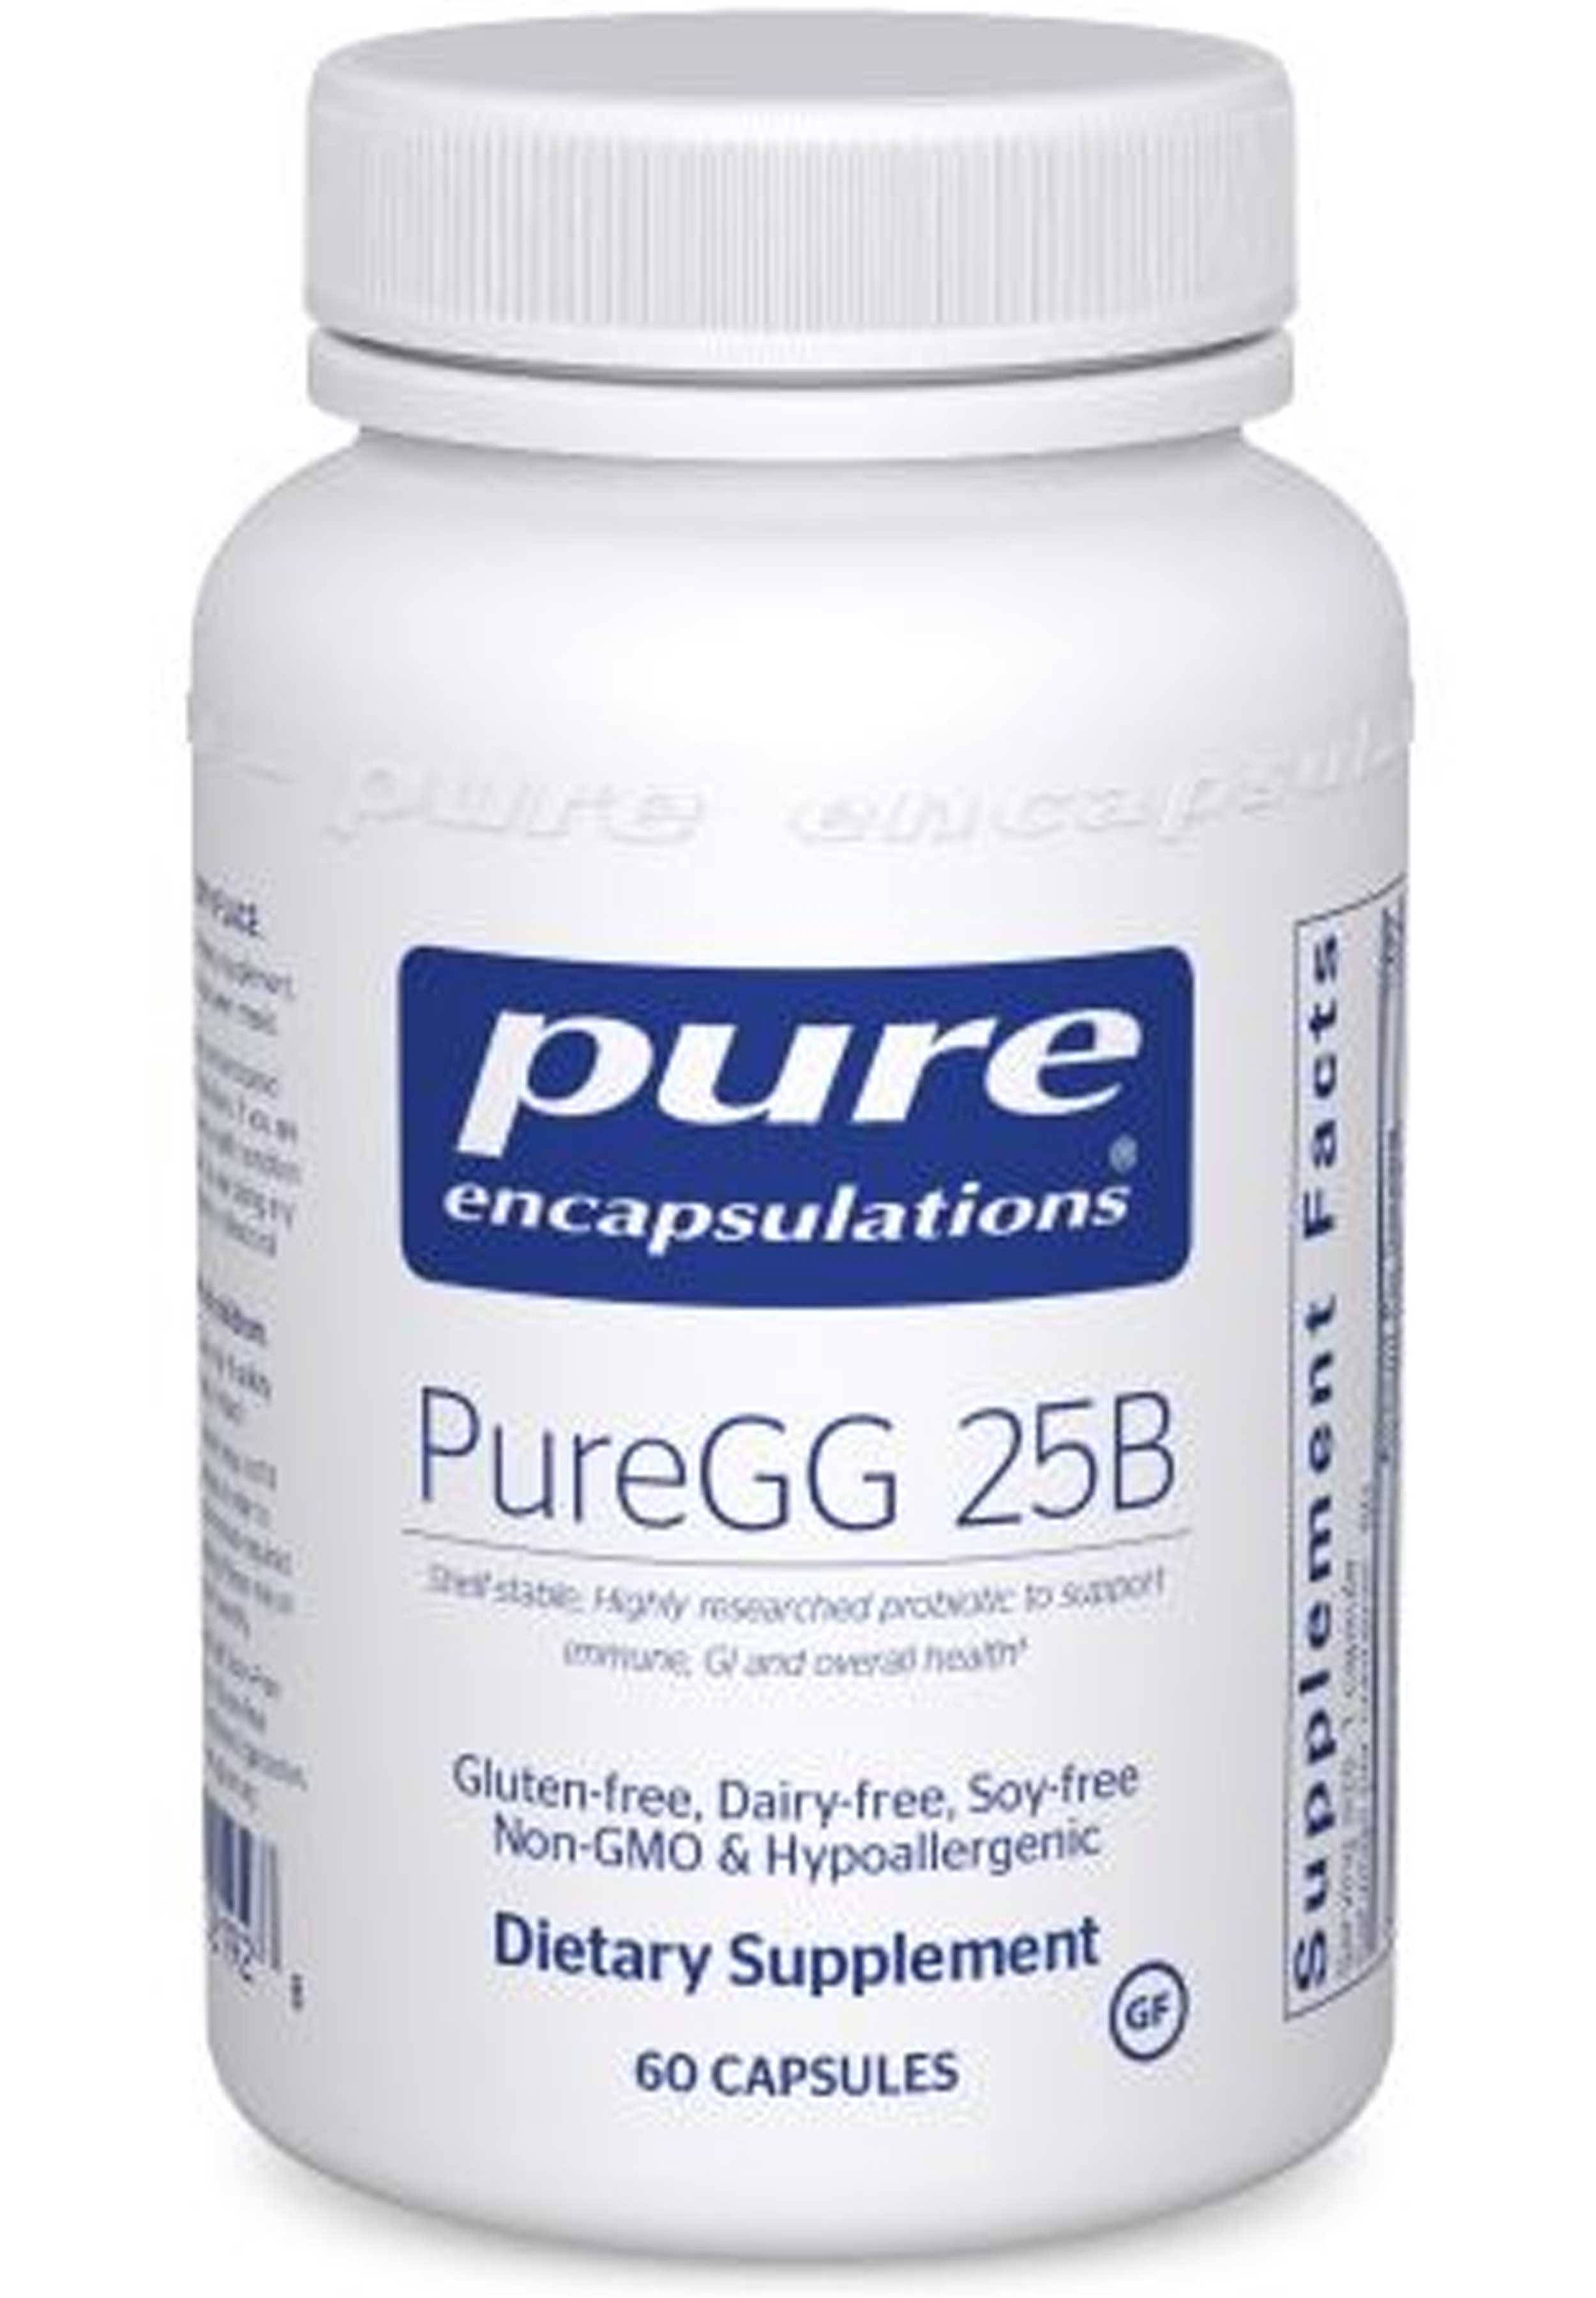 Pure Encapsulations PureGG 25B